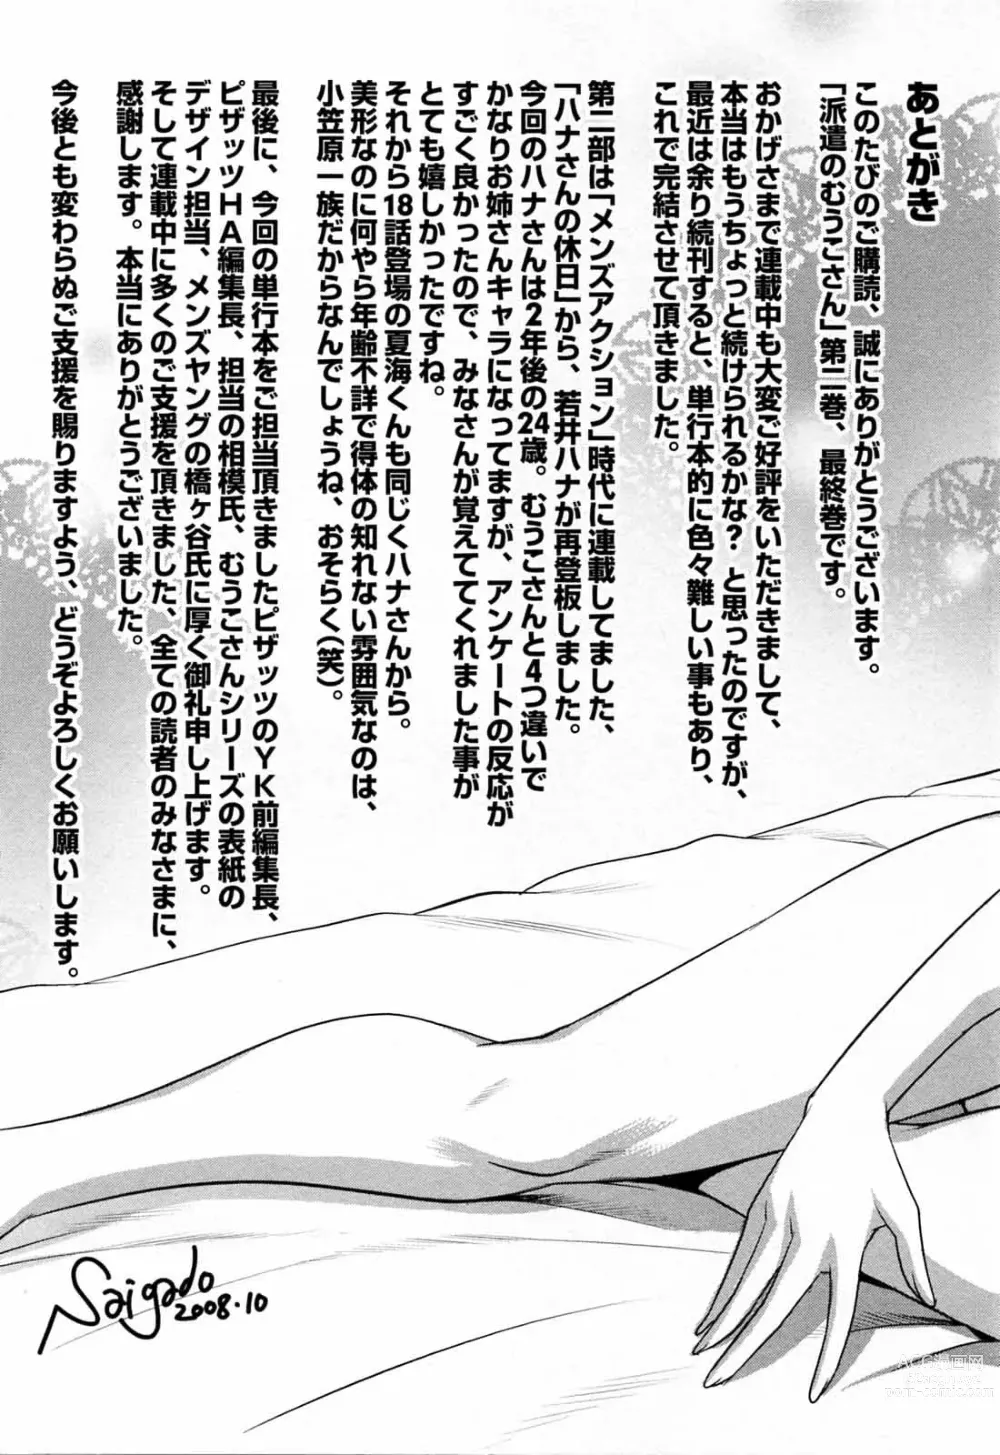 Page 212 of manga 파견사원 무우코 씨 2